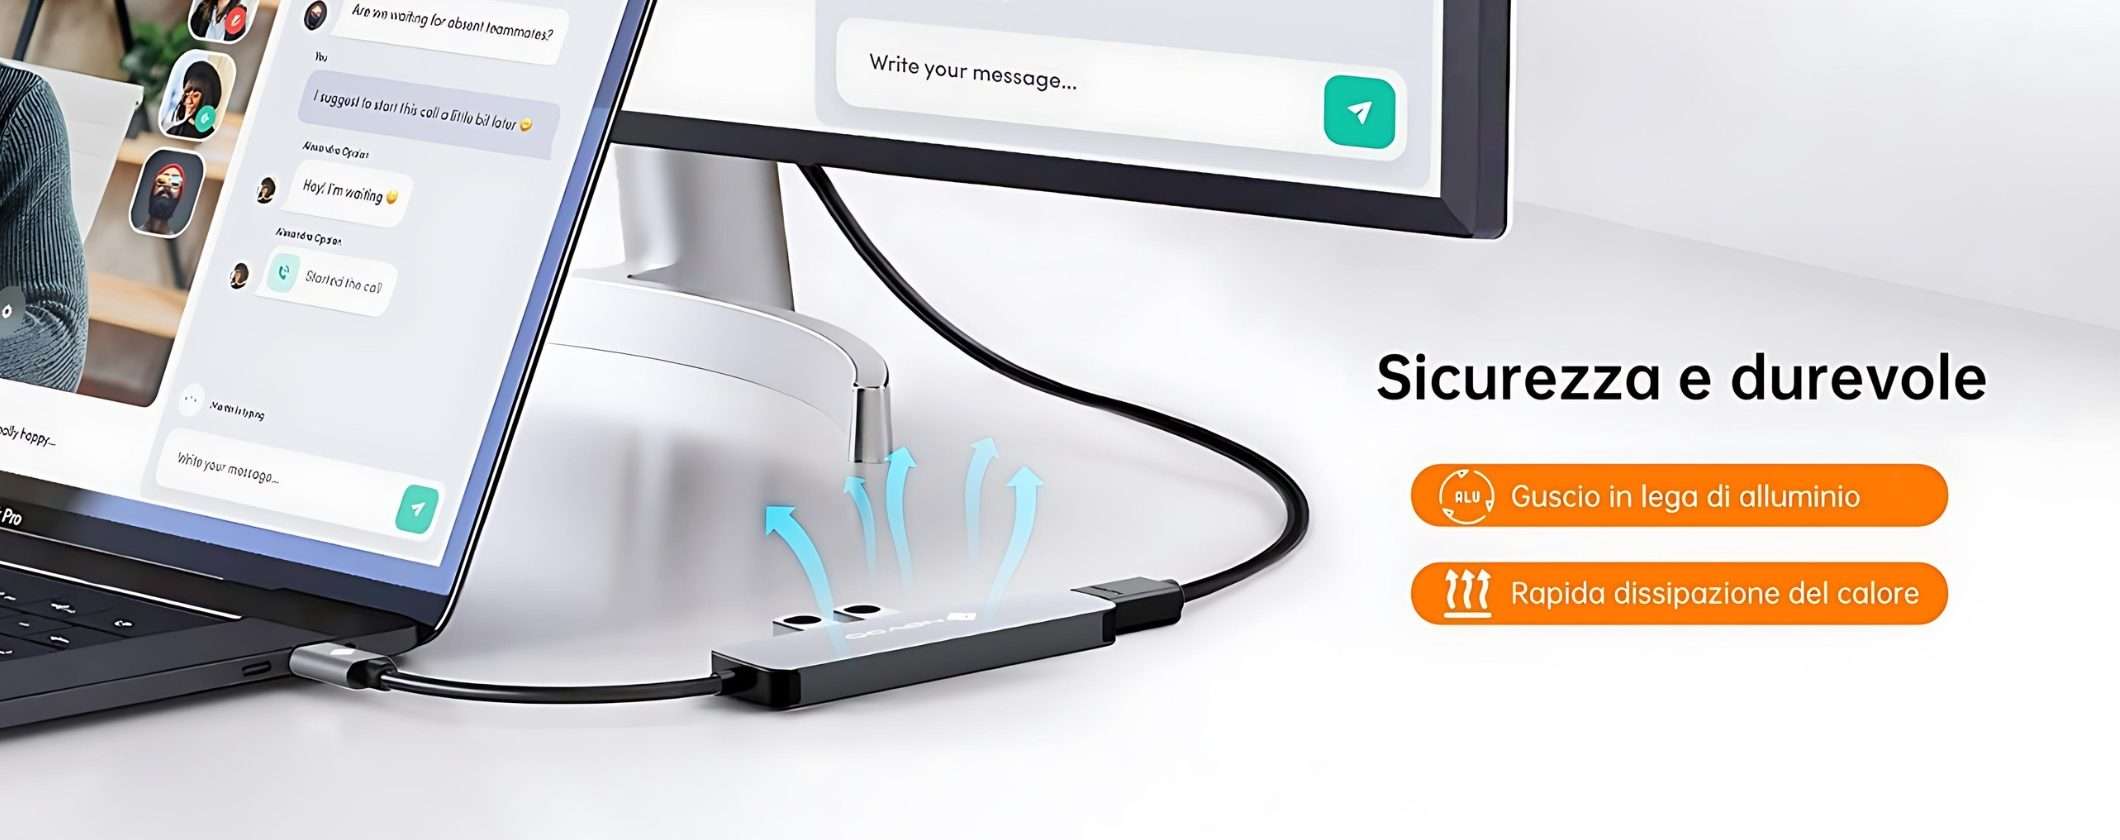 Hub USB-C 5 in 1: espandi le tue possibilità a soli 9€ su Amazon